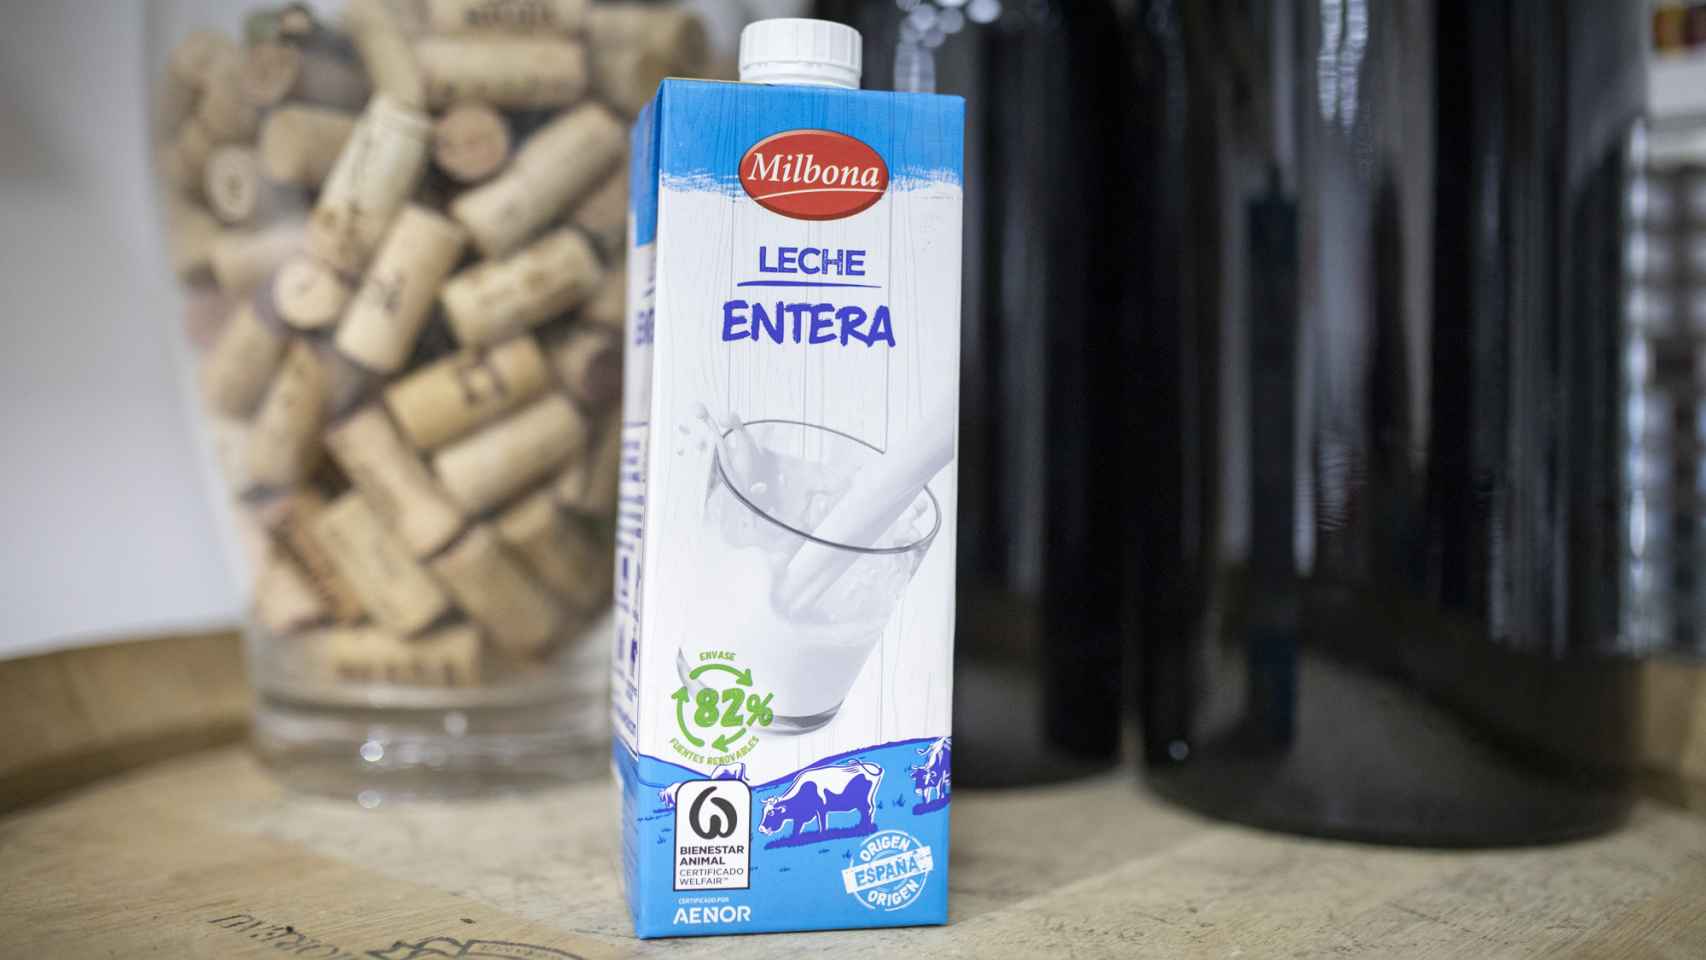 La leche entera de Milbona, la marca blanca de los lácteos de Lidl.